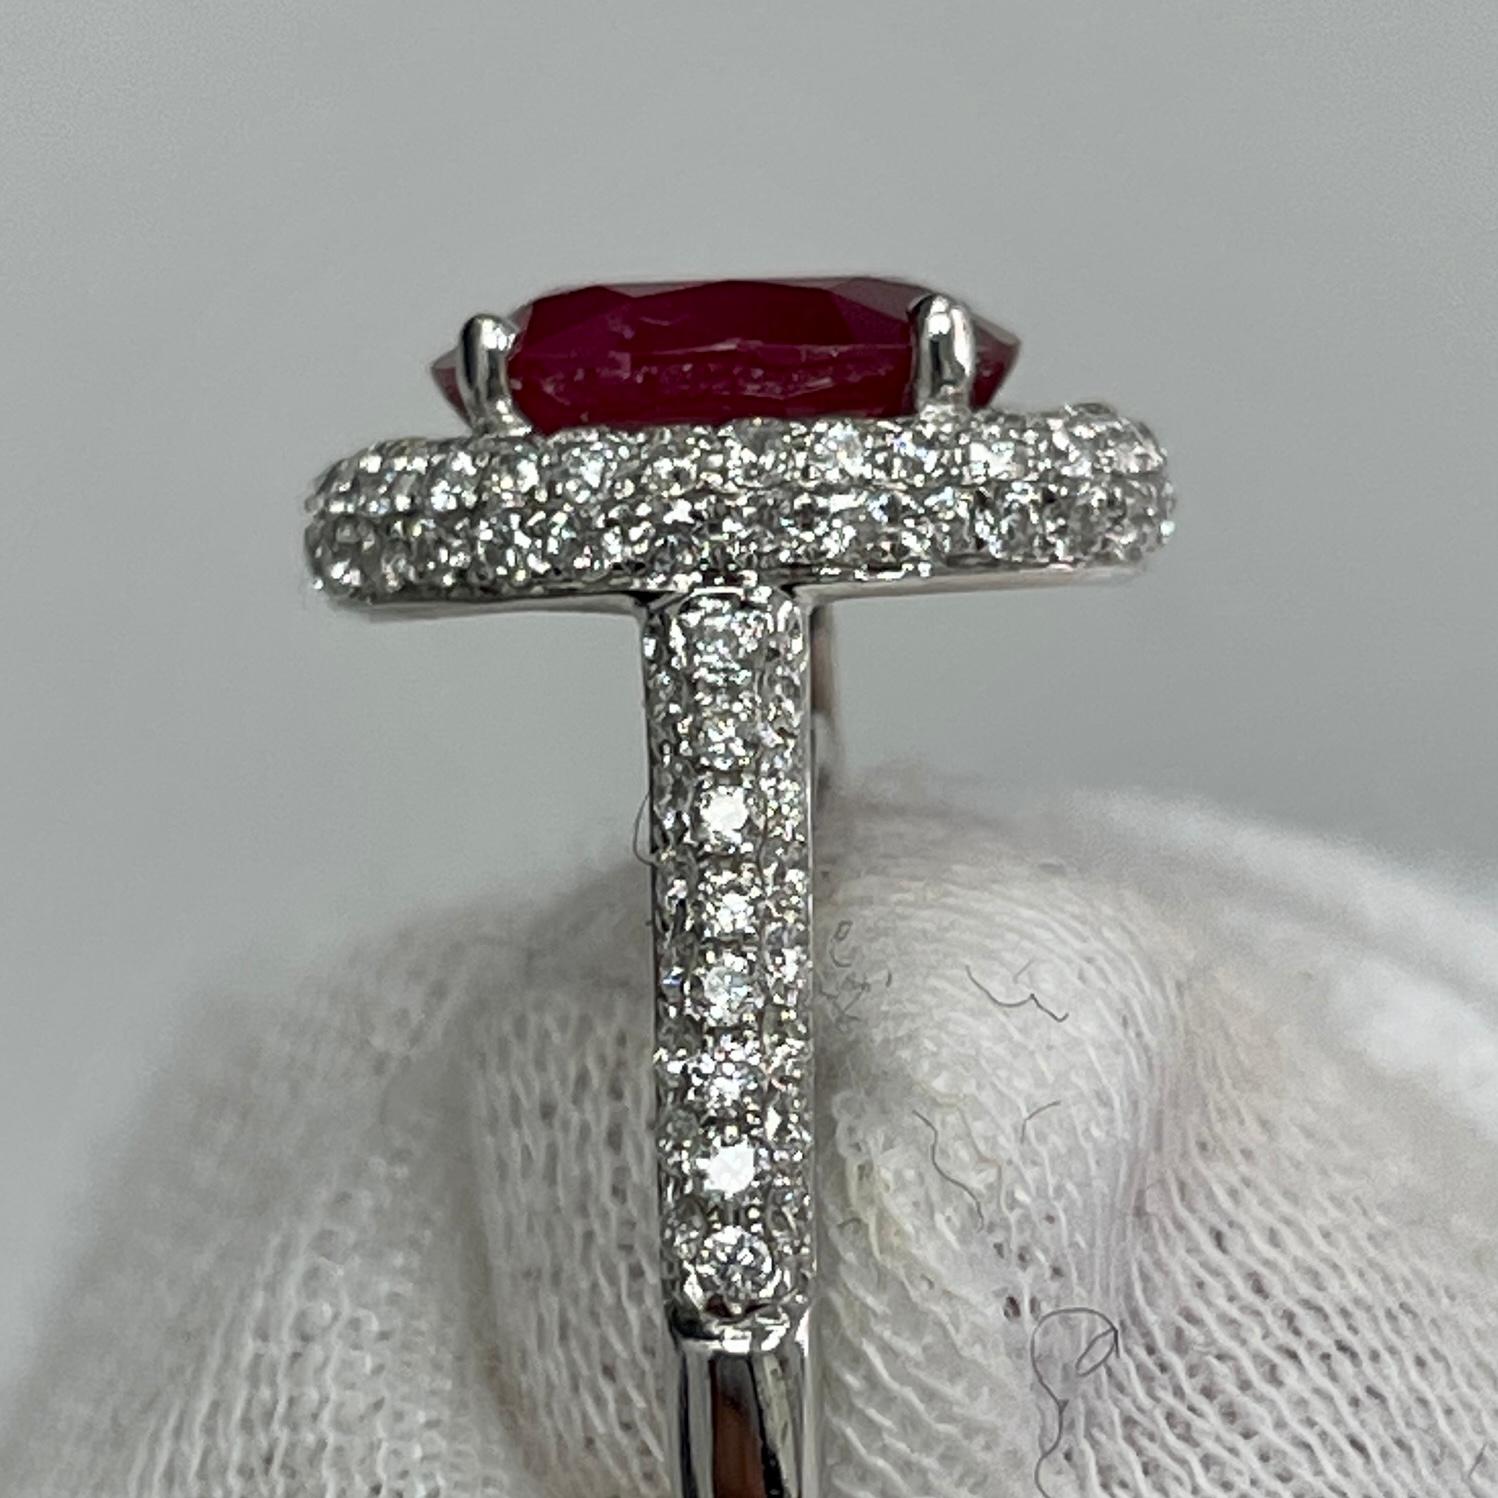 Dieser satte, stoppschildrote, nicht erhitzte Rubin ist in einen eleganten Ring aus 18 Karat Weißgold mit 0,84 Karat strahlend weißen Diamanten gefasst.